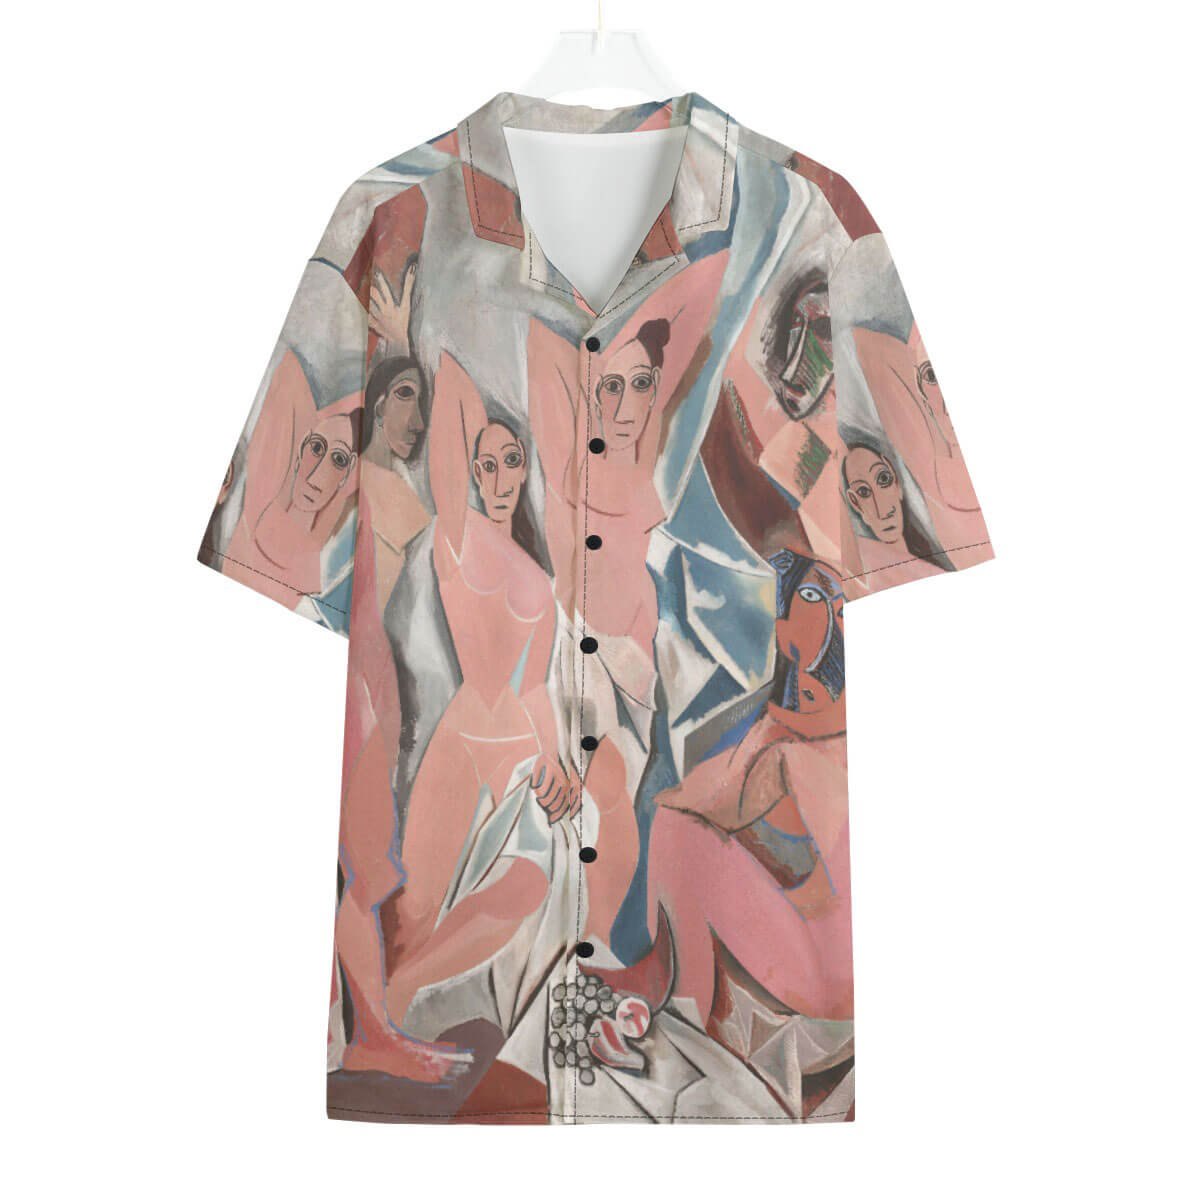 Cubist masterpiece shirt featuring Picasso's Les Demoiselles d'Avignon